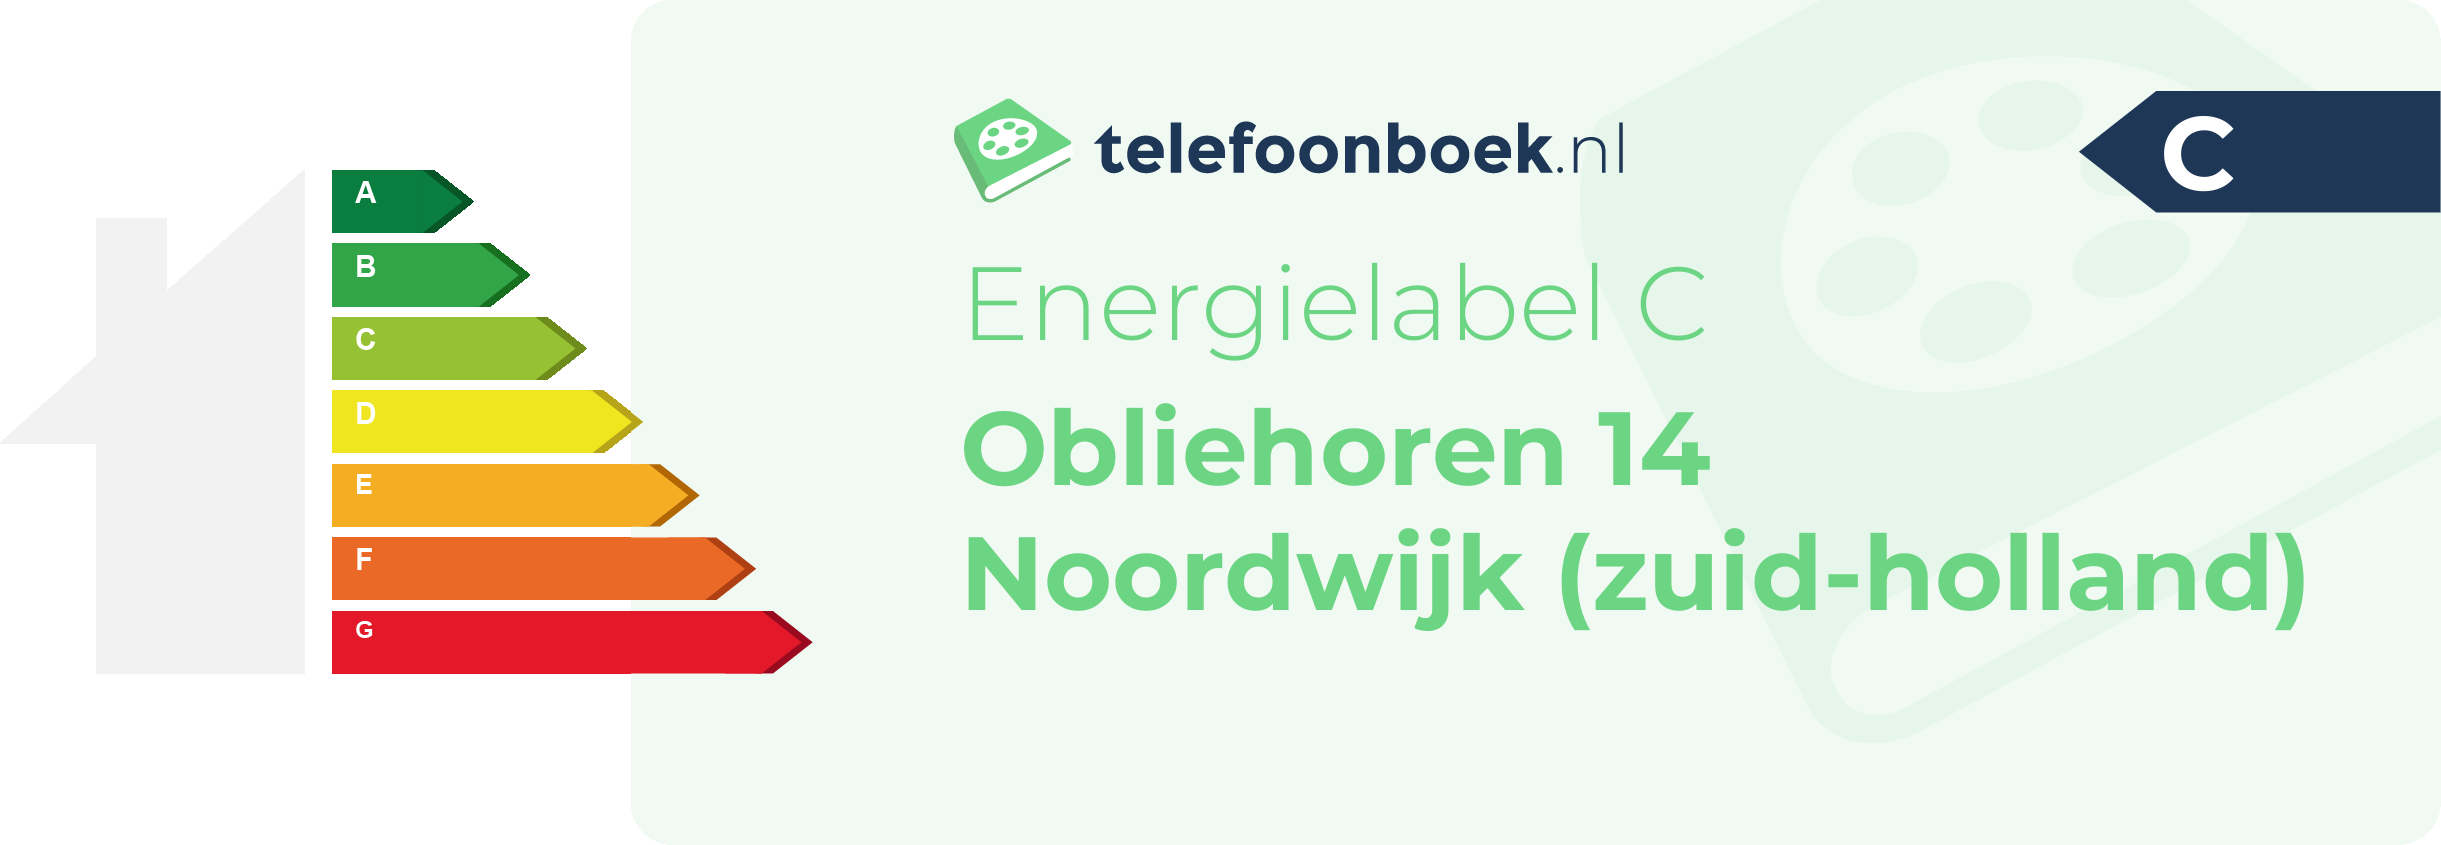 Energielabel Obliehoren 14 Noordwijk (Zuid-Holland)